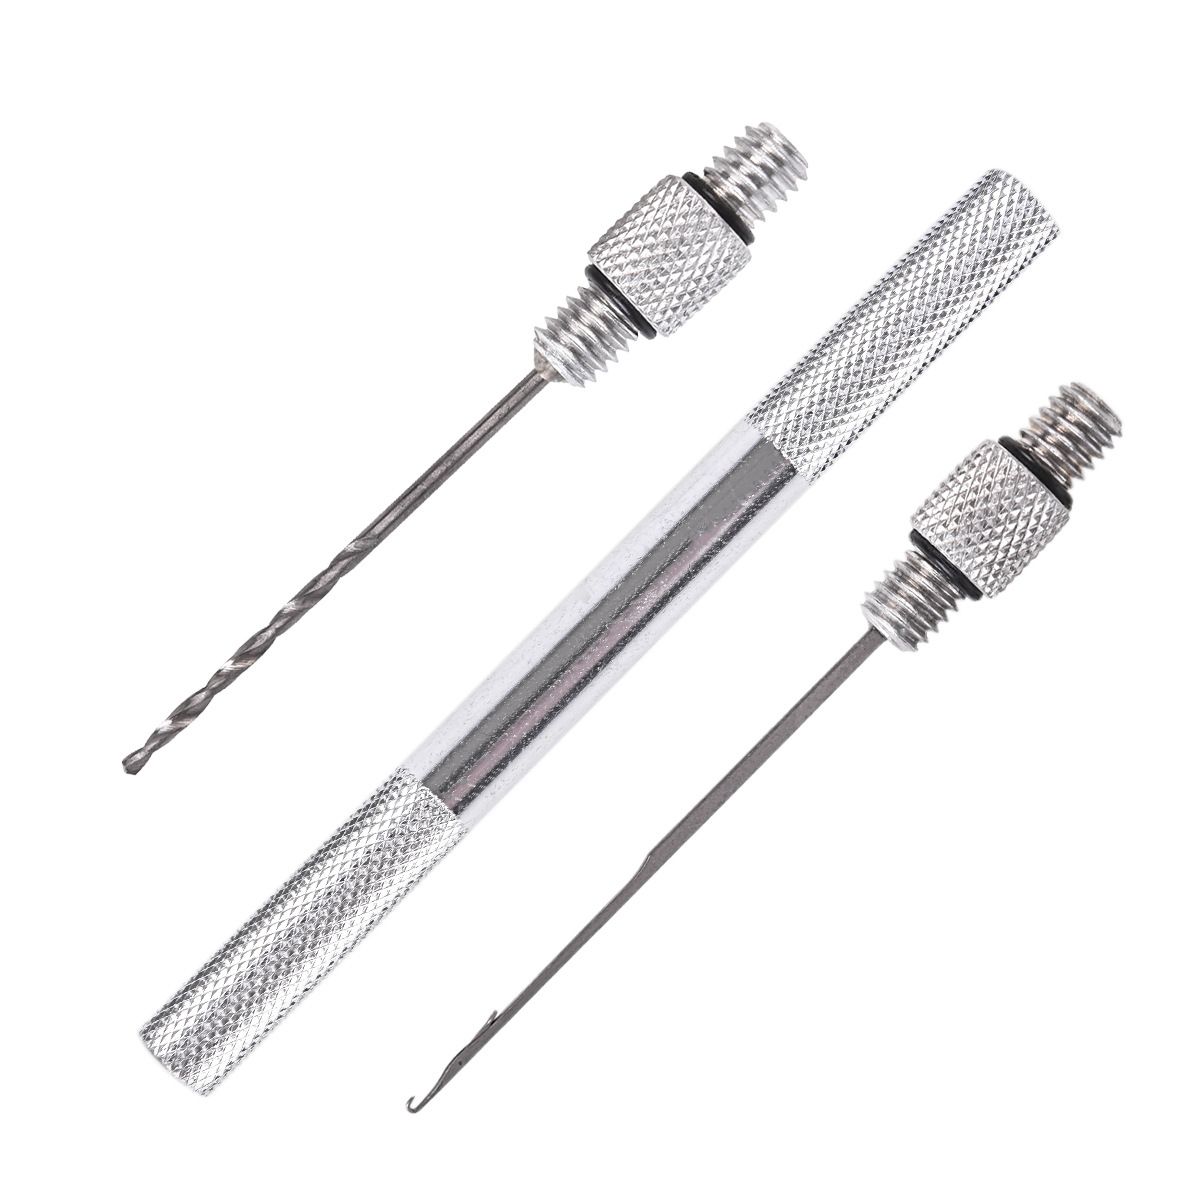 LEO-27983-3pcsset-Fishing-Tackle-Aluminium-Alloy-Bait-Needle-Fishing-Tool-1342952